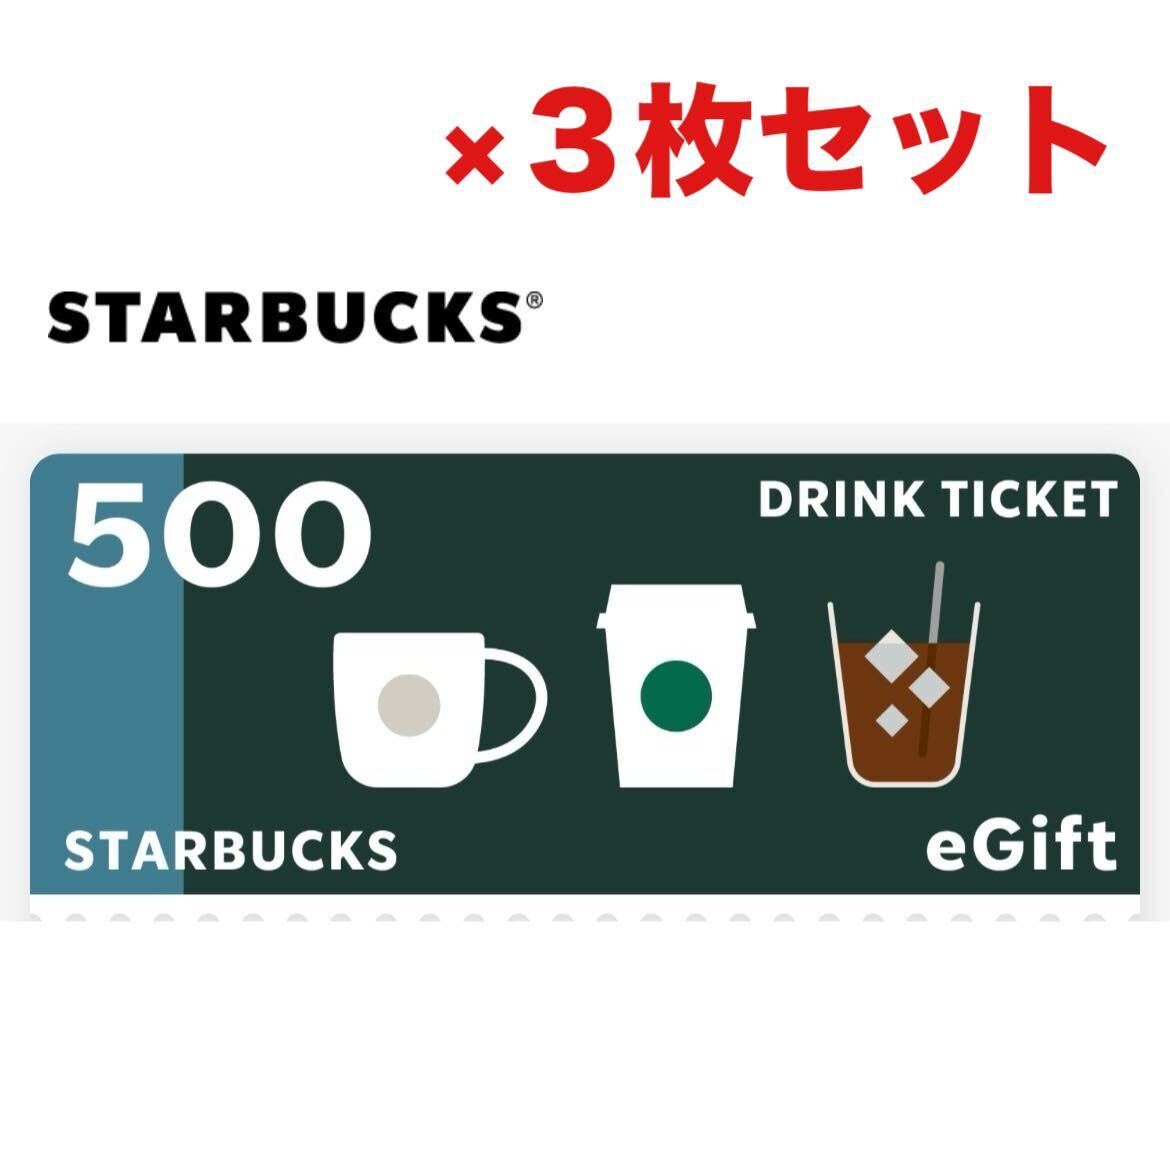 5/31 временные ограничения старт baegift напиток билет 1500 иен (500 иен минут ×3 листов ) комплект Starbucks 